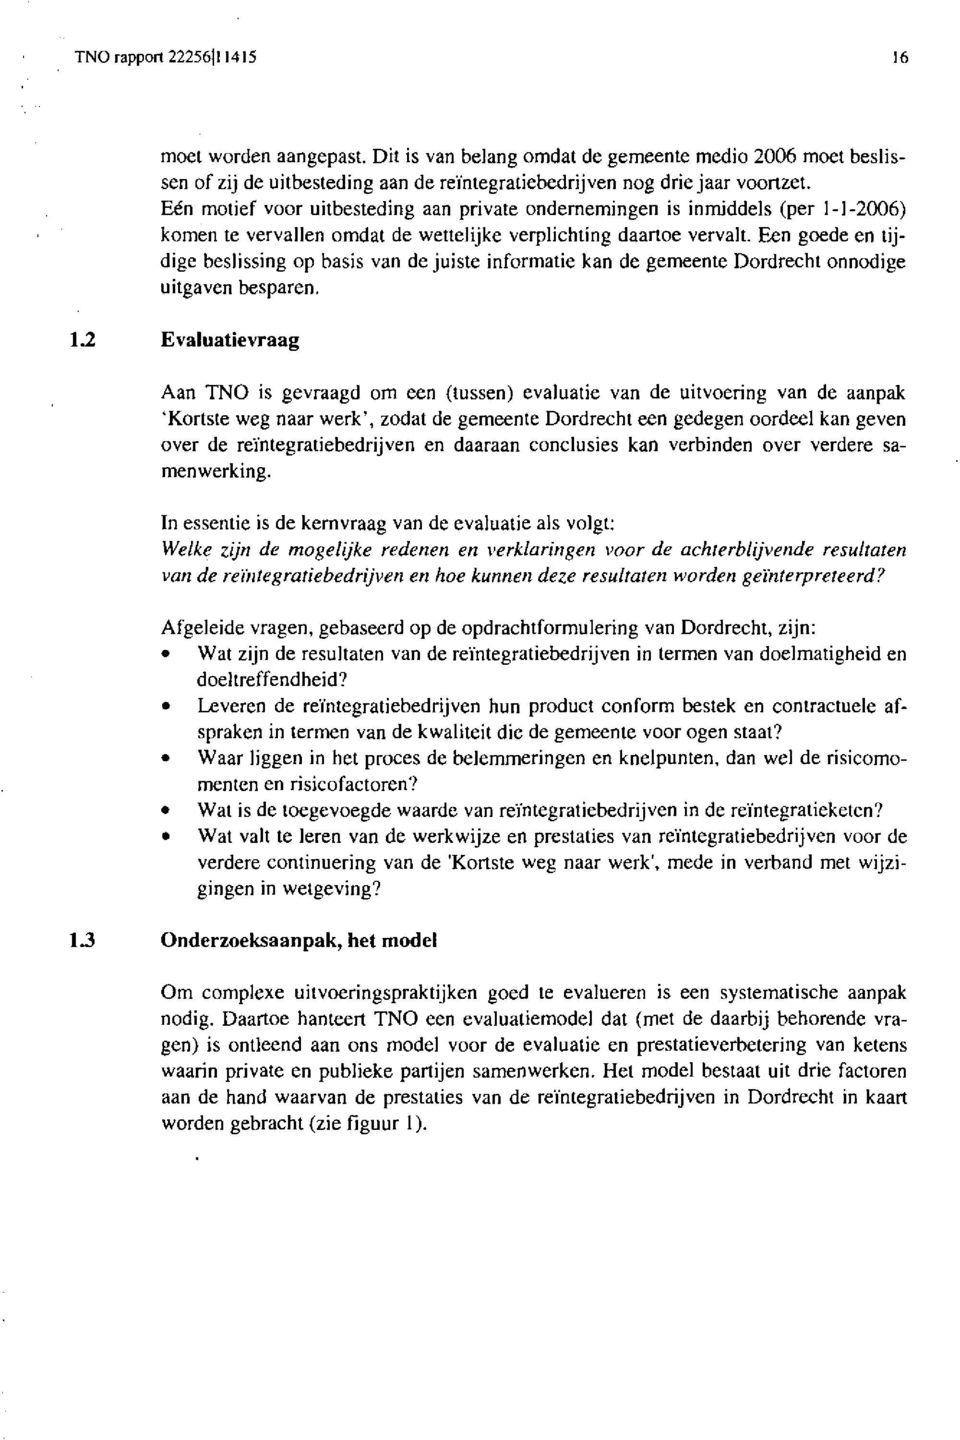 Een goede en tijdige beslissing op basis van de juiste informatie kan de gemeente Dordrecht onnodige uitgaven besparen. 1.